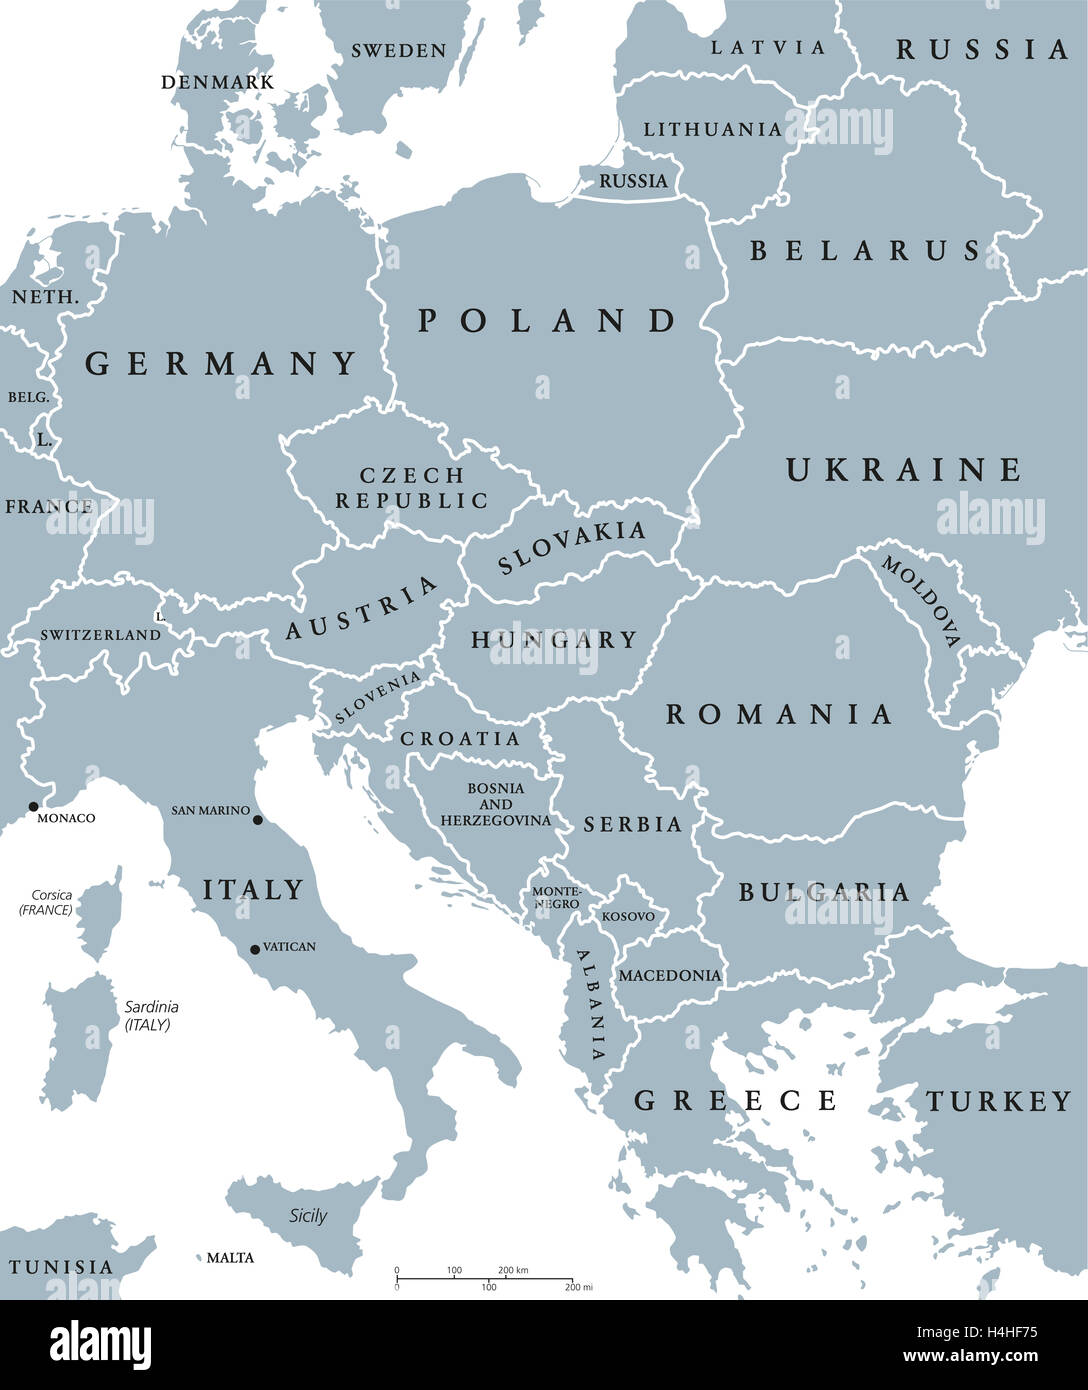 Europa centrale paesi mappa politico con i confini nazionali. Illustrazione di colore grigio con etichetta inglese e la scala. Foto Stock